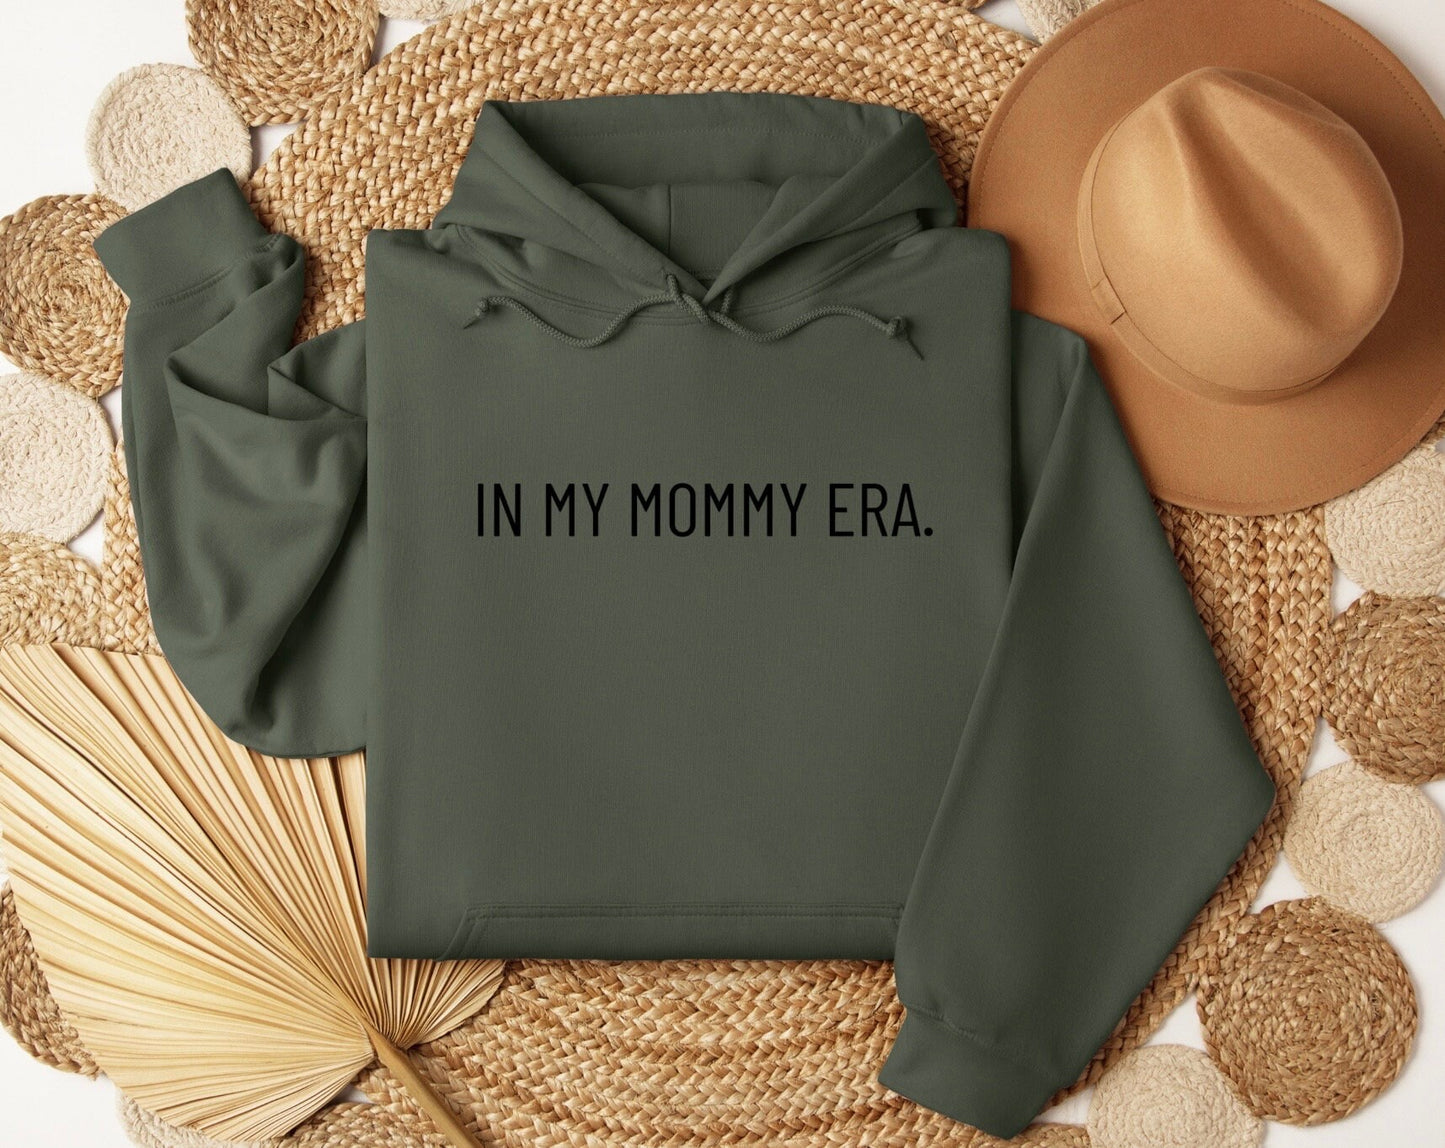 In My Mommy Era Sweatshirt, In My Mommy Era Shirt, In My Mommy Era Crewneck, In My Mommy Era Sweater, Oversized Sweater, Comfy Sweatshirt